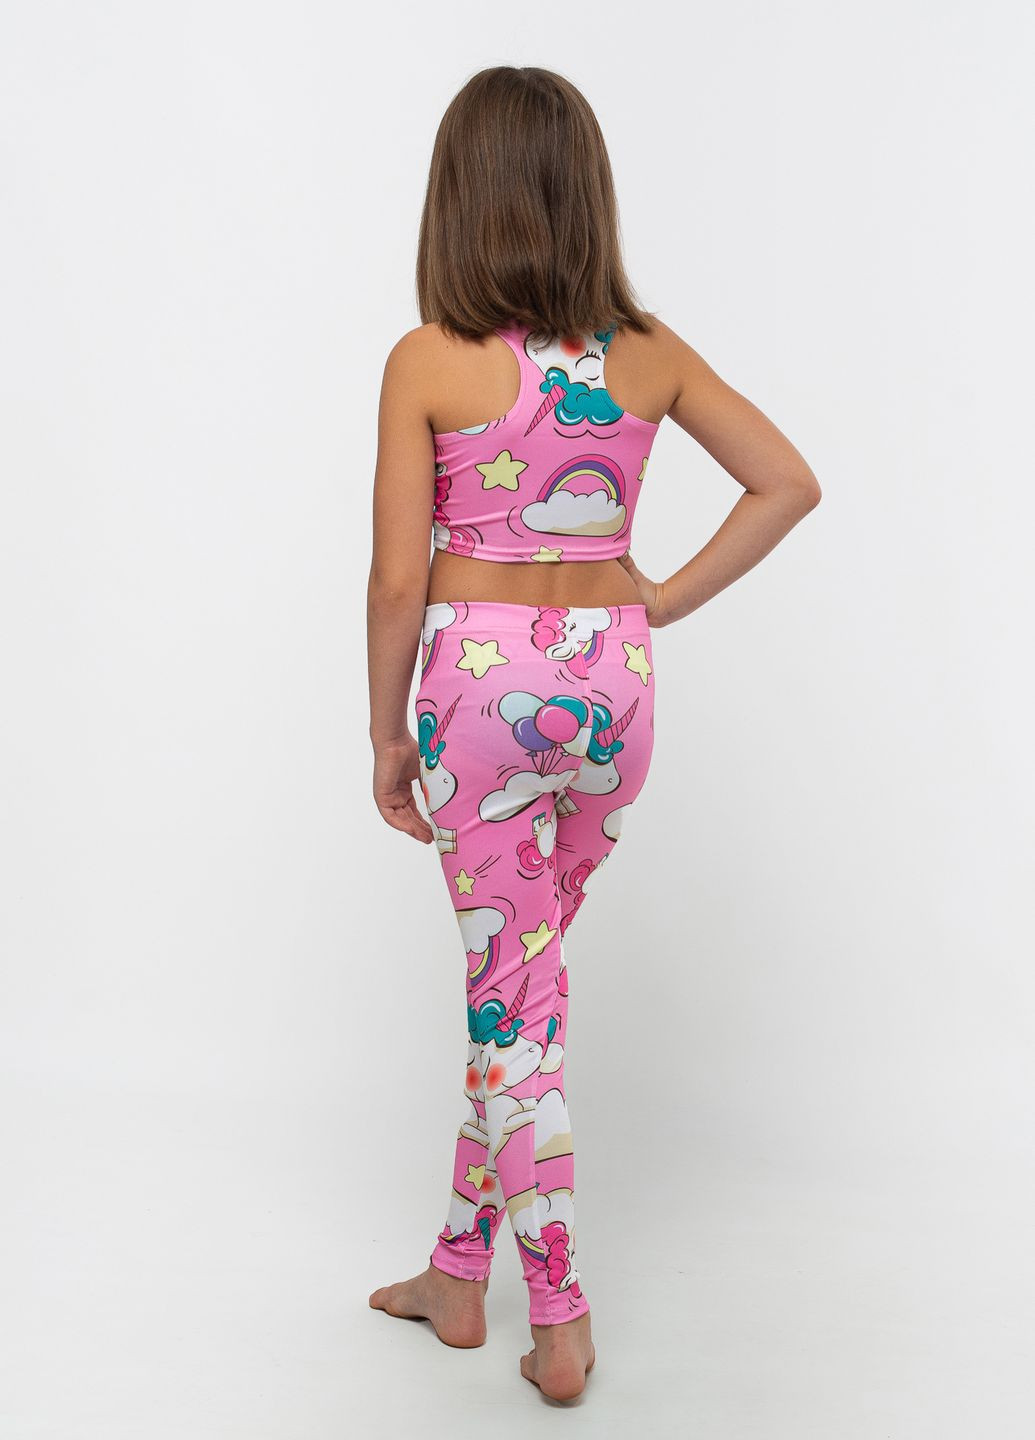 Спортивний комплект для дівчинки (топ + лосини) рожевий спортивний костюм для гімнастики Total Pro fitness (276399988)